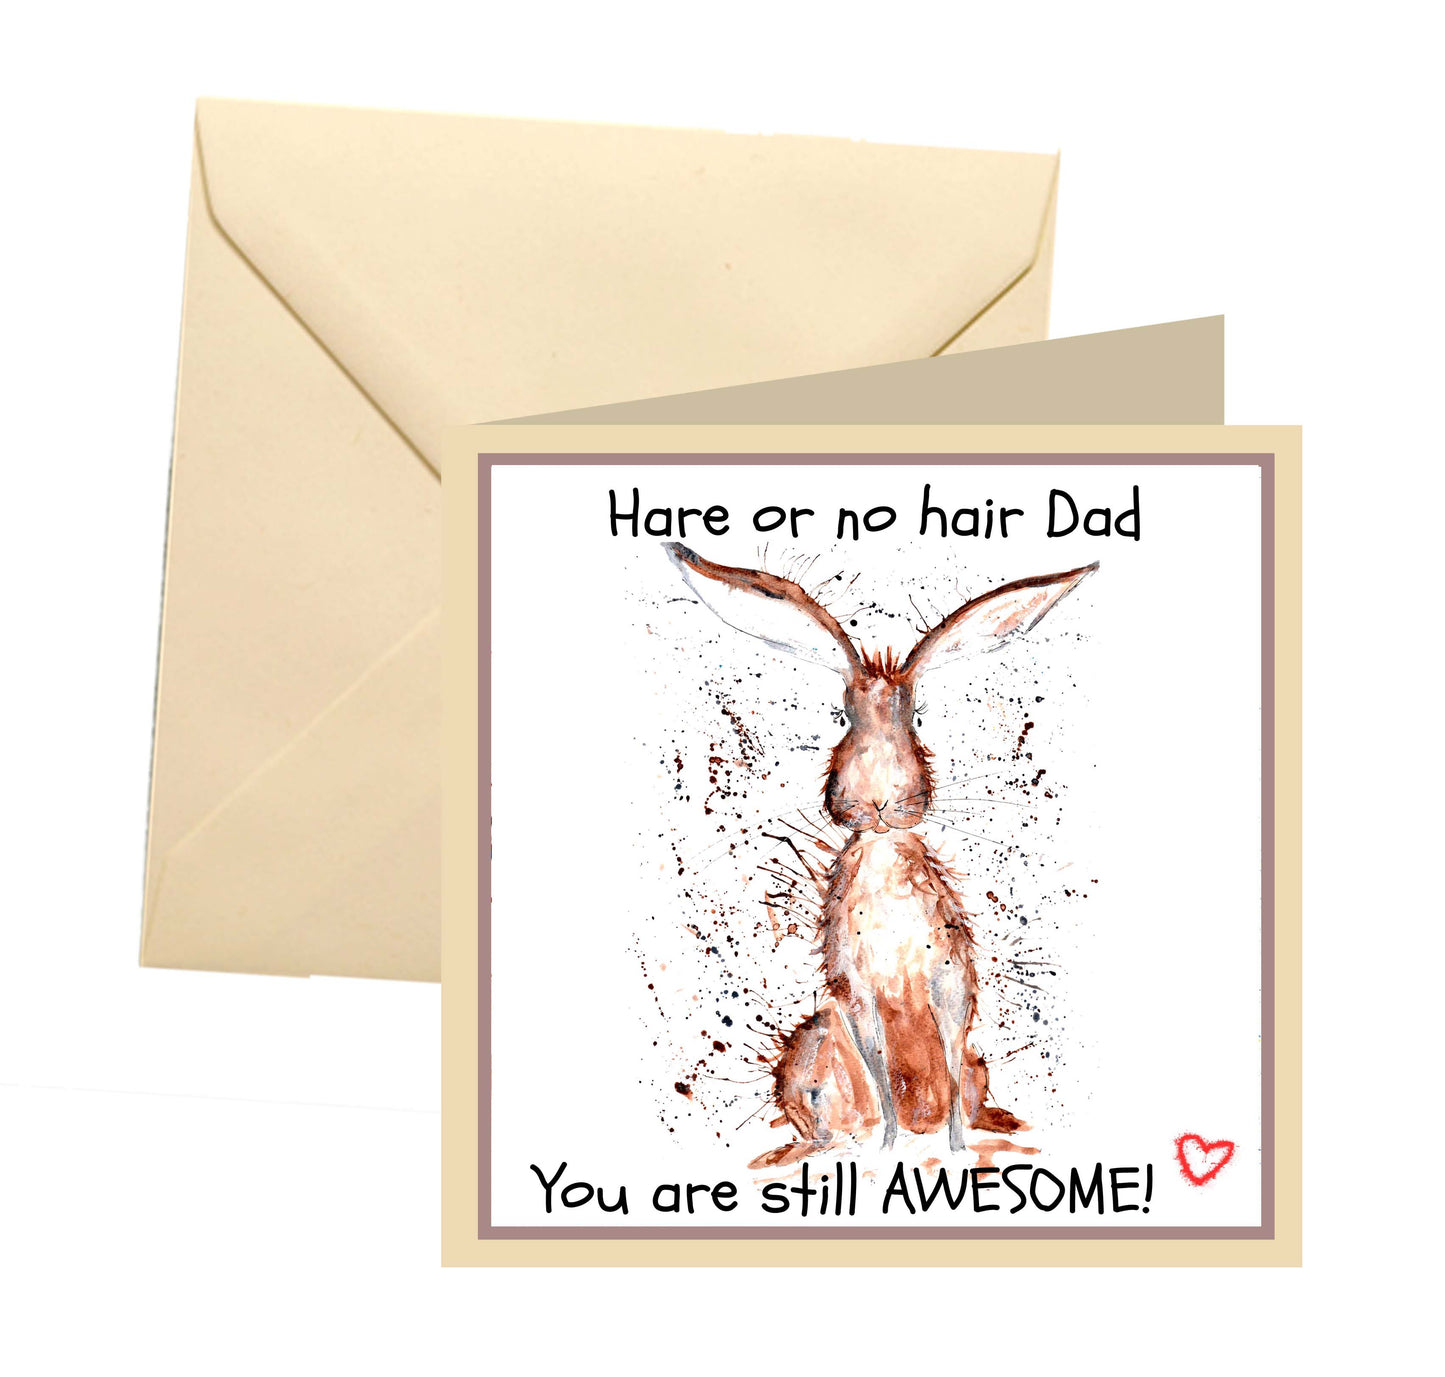 Hare father's joke card